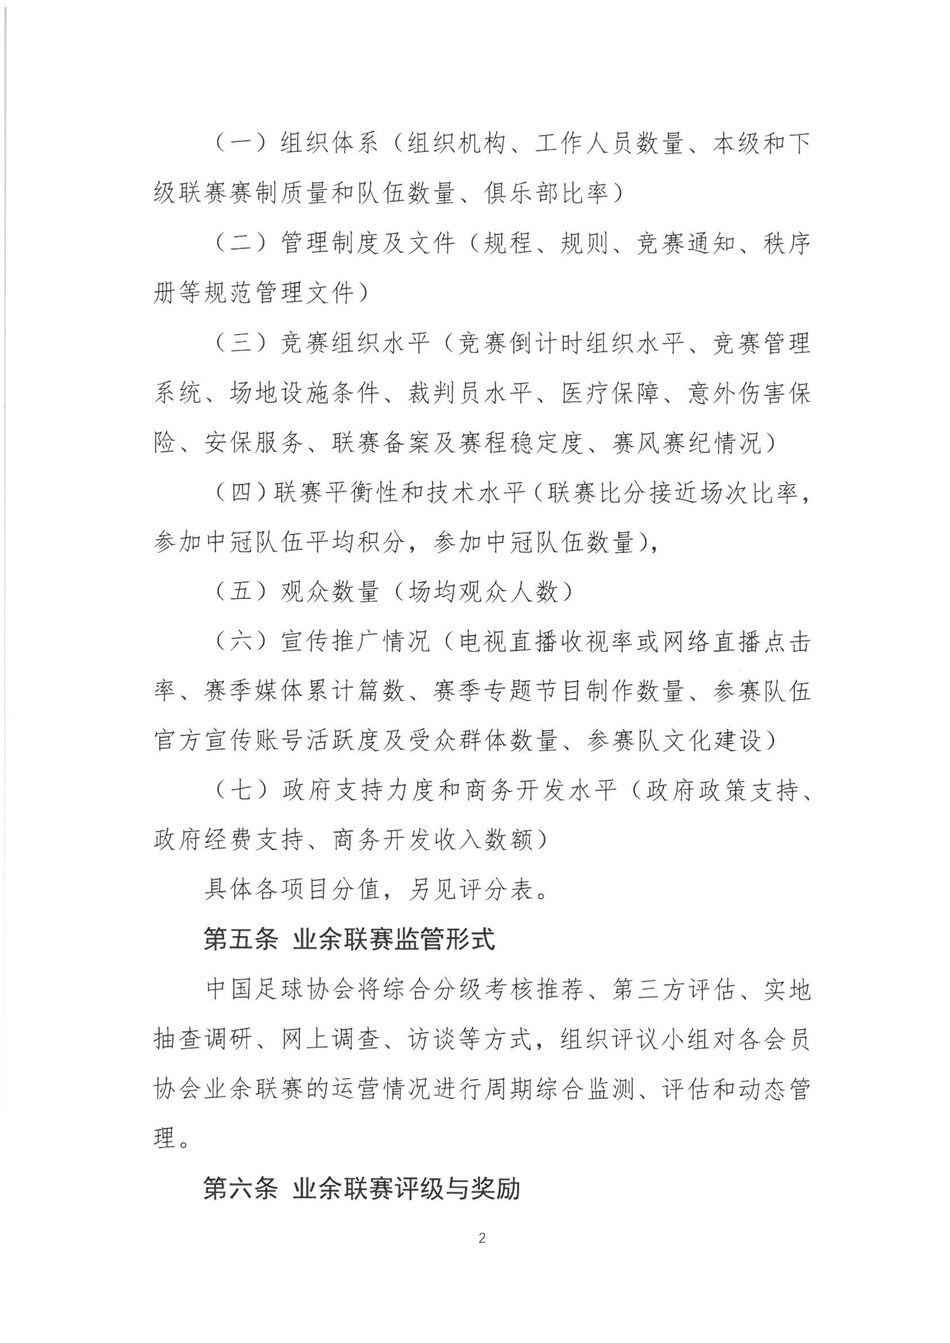 北京时间1月23日，足协下发正式文件《中国足球协会业余联赛规范管理办法（试行）》和《中国足球协会业余联赛评级管理办法（试行）》